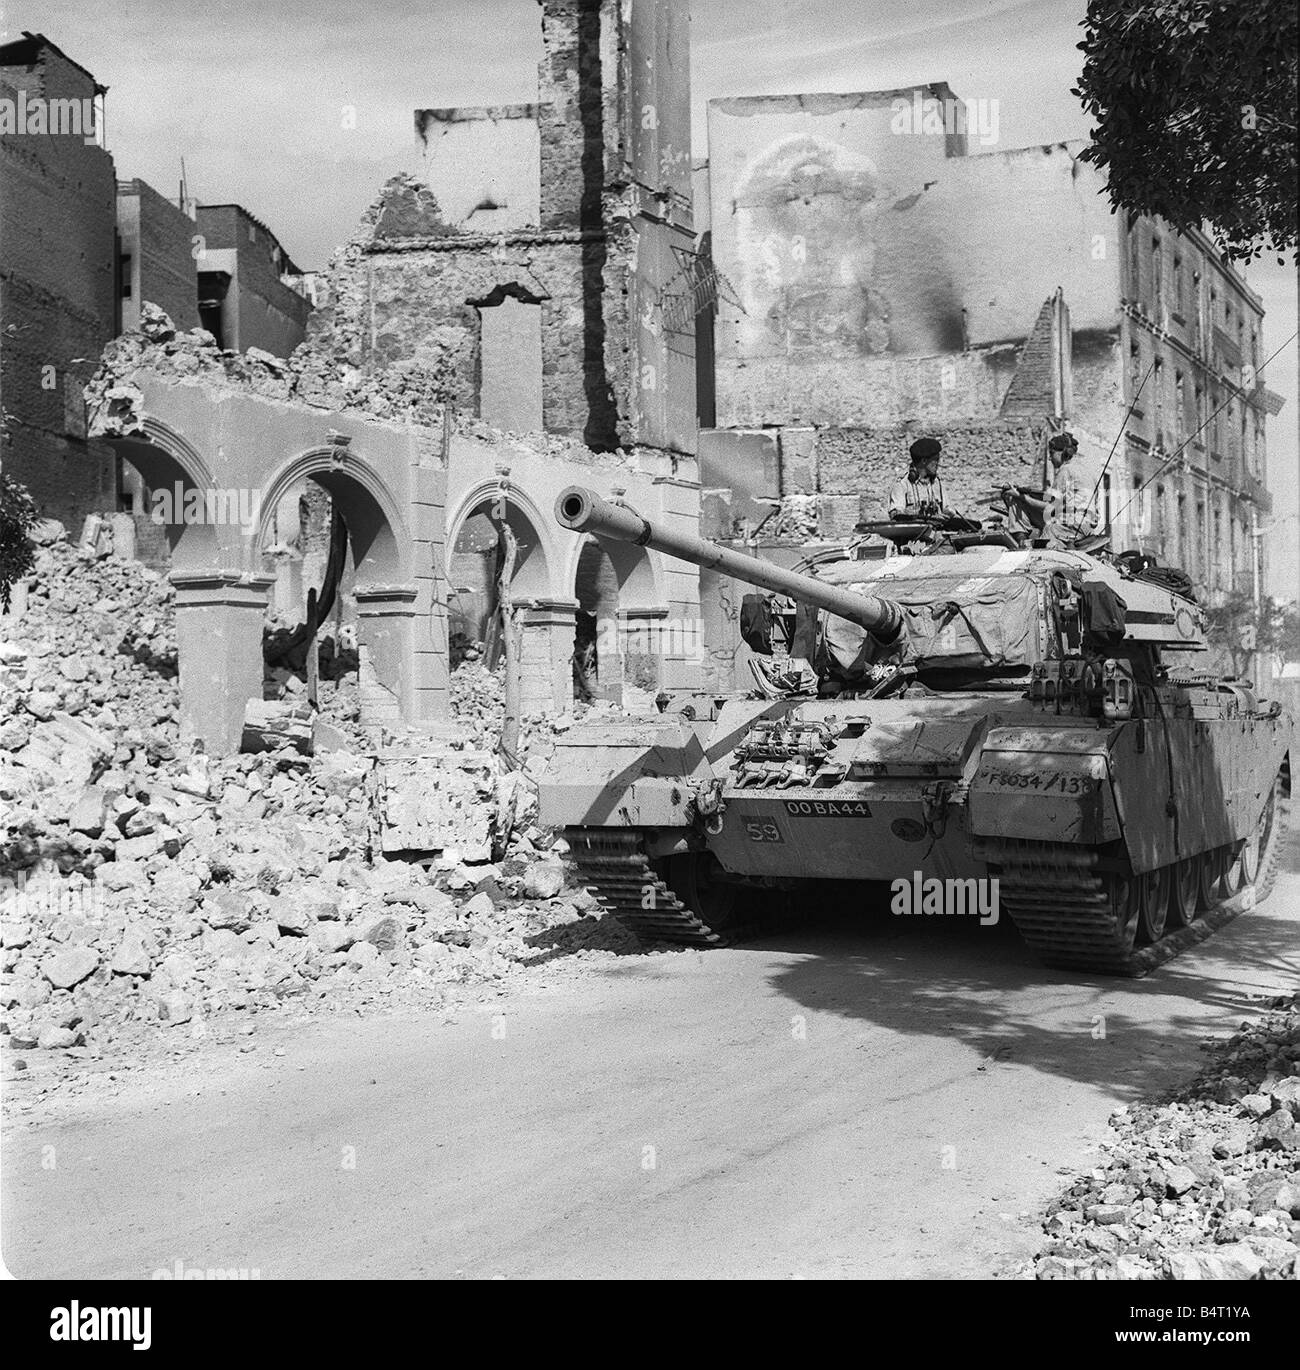 صور نادرة ، من بورسعيد بعد ألغزو ألإنجليزي 1956 للمدينة ، تعطي فكرة عن كيف كنا  نعيش تحت ألتهديد ألعسكري أليومي Suez-crisis-1956-a-centurion-tank-lends-support-to-commando-troops-B4T1YA